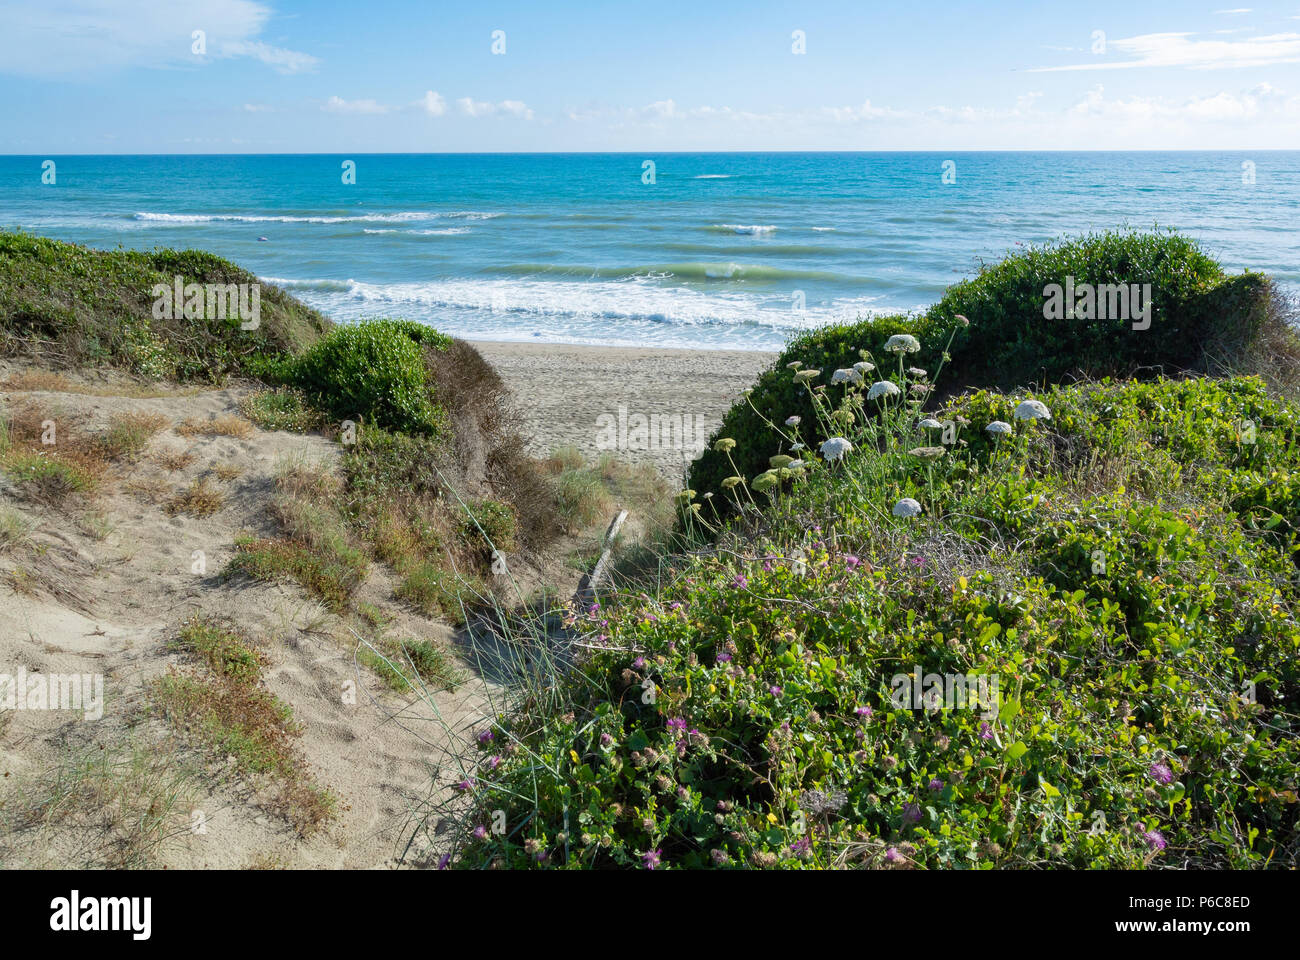 Spiaggia con vegetazioni della riserva naturale nei pressi di Ostia, Roma, lazio, Italy Foto Stock